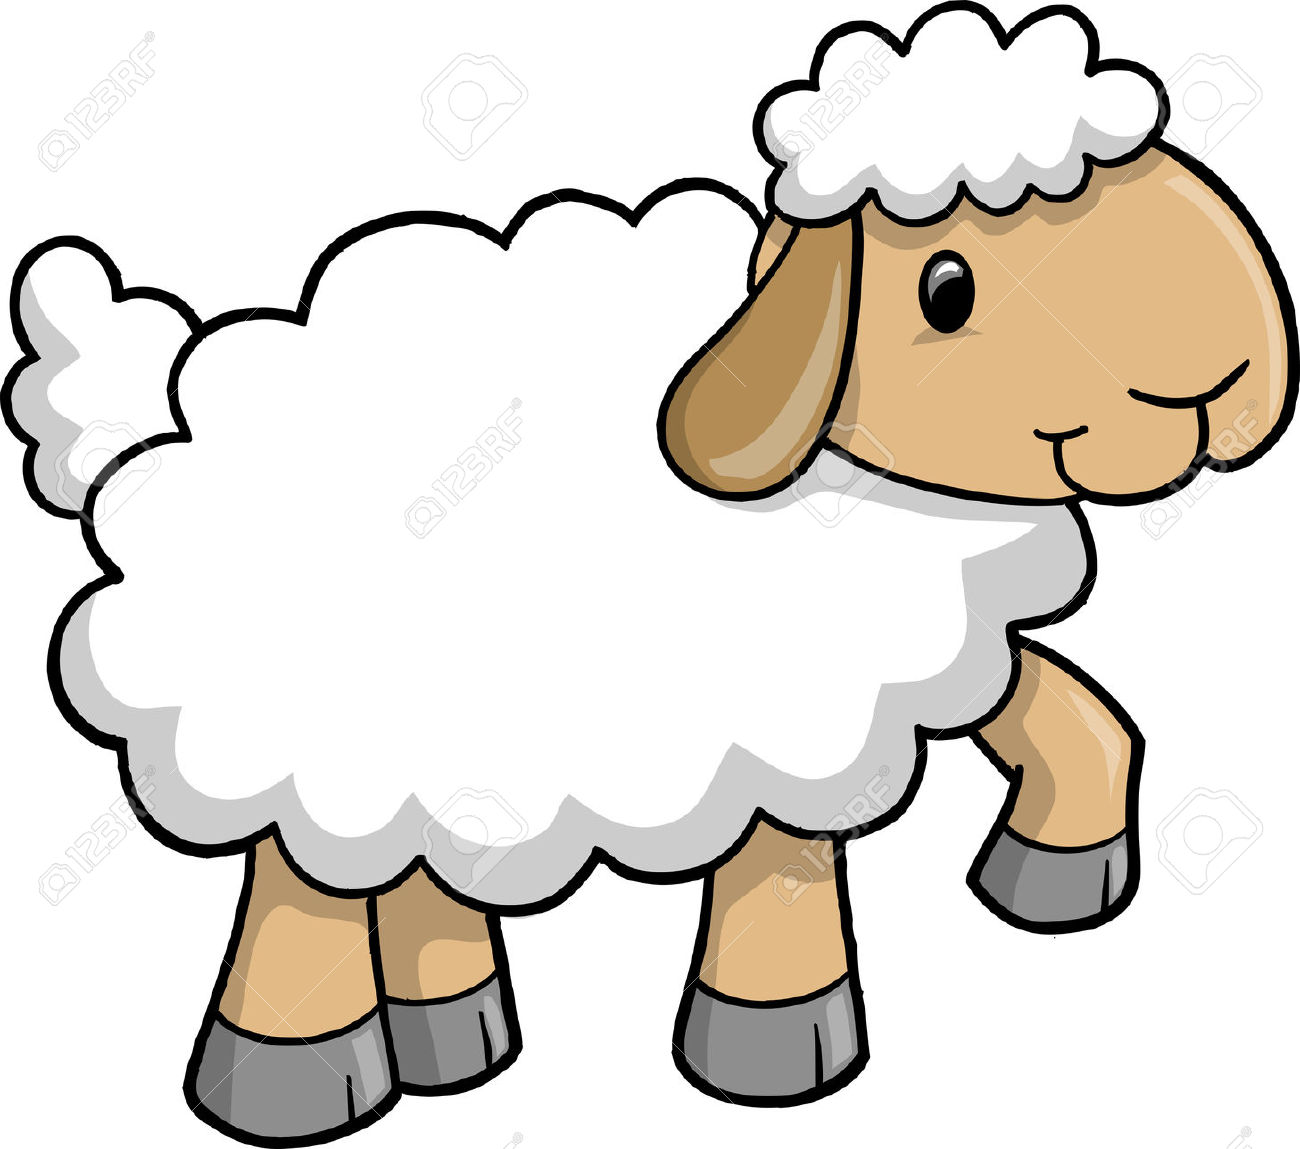 Sheep cliparts